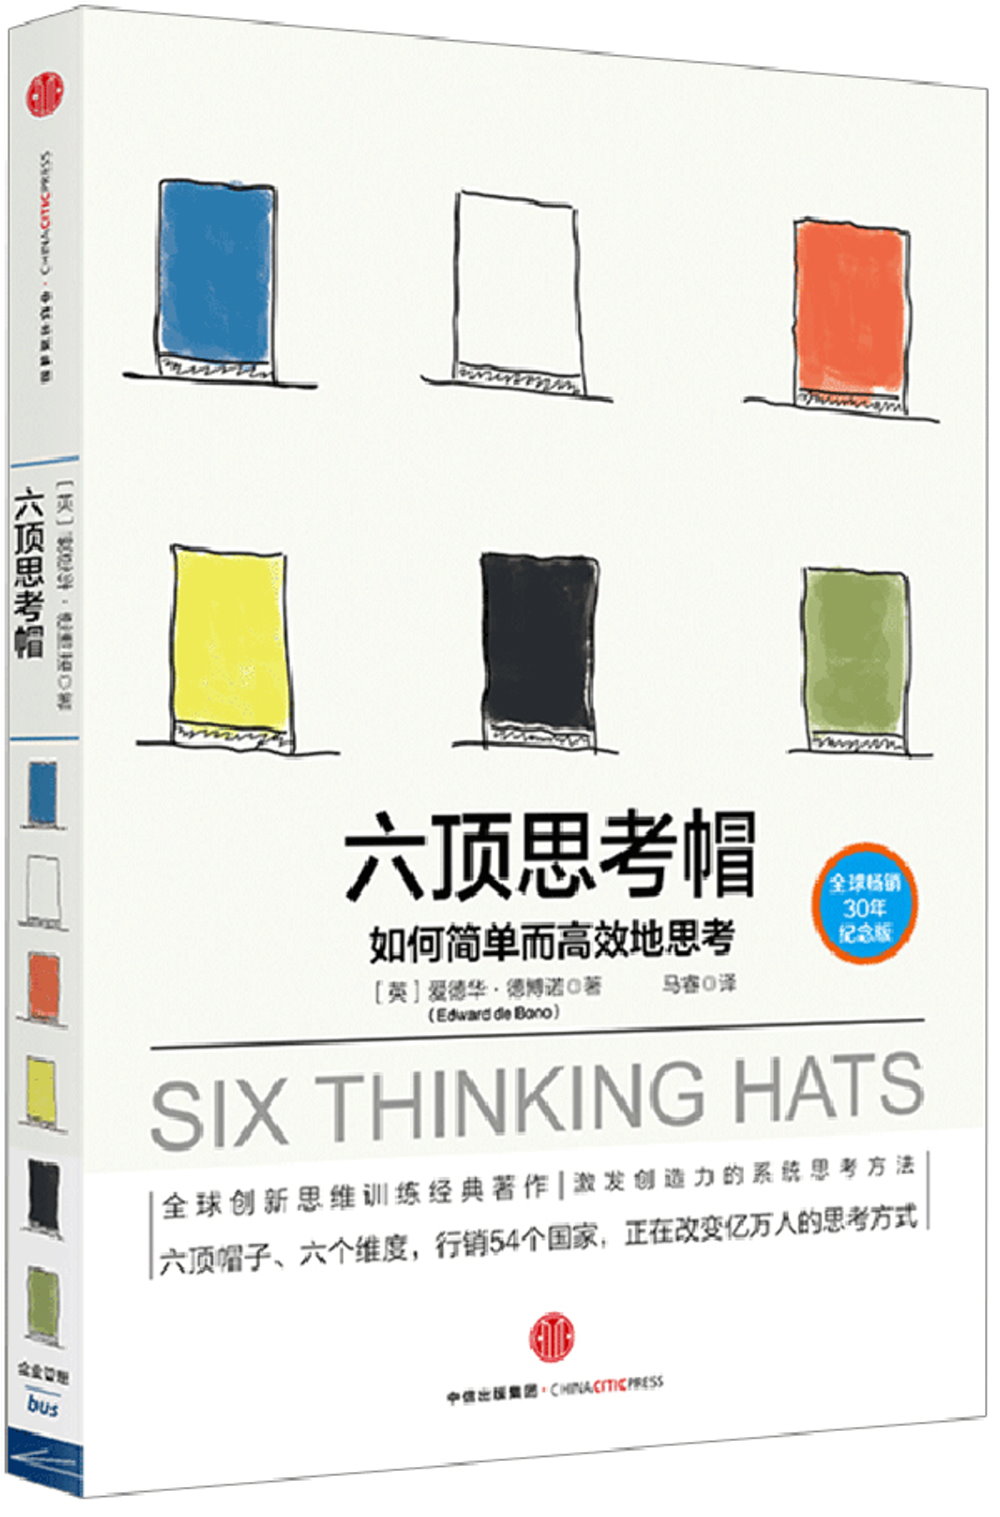 六頂思考帽：如何簡單而高效地思考(全球暢銷30年紀念版)